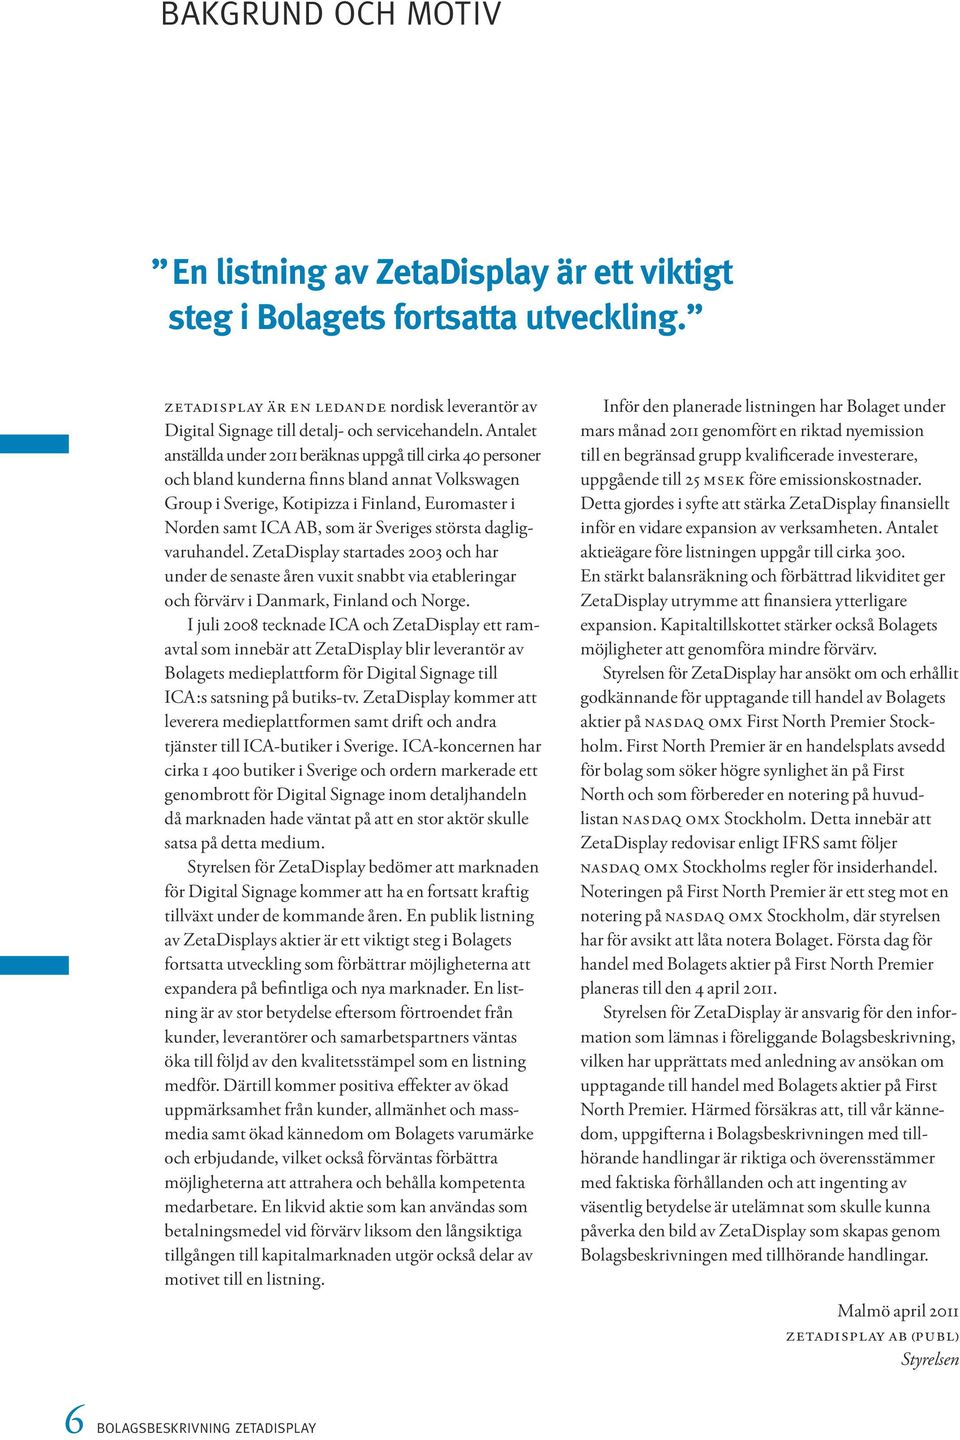 Sveriges största dagligvaruhandel. ZetaDisplay startades 2003 och har under de senaste åren vuxit snabbt via etableringar och förvärv i Danmark, Finland och Norge.